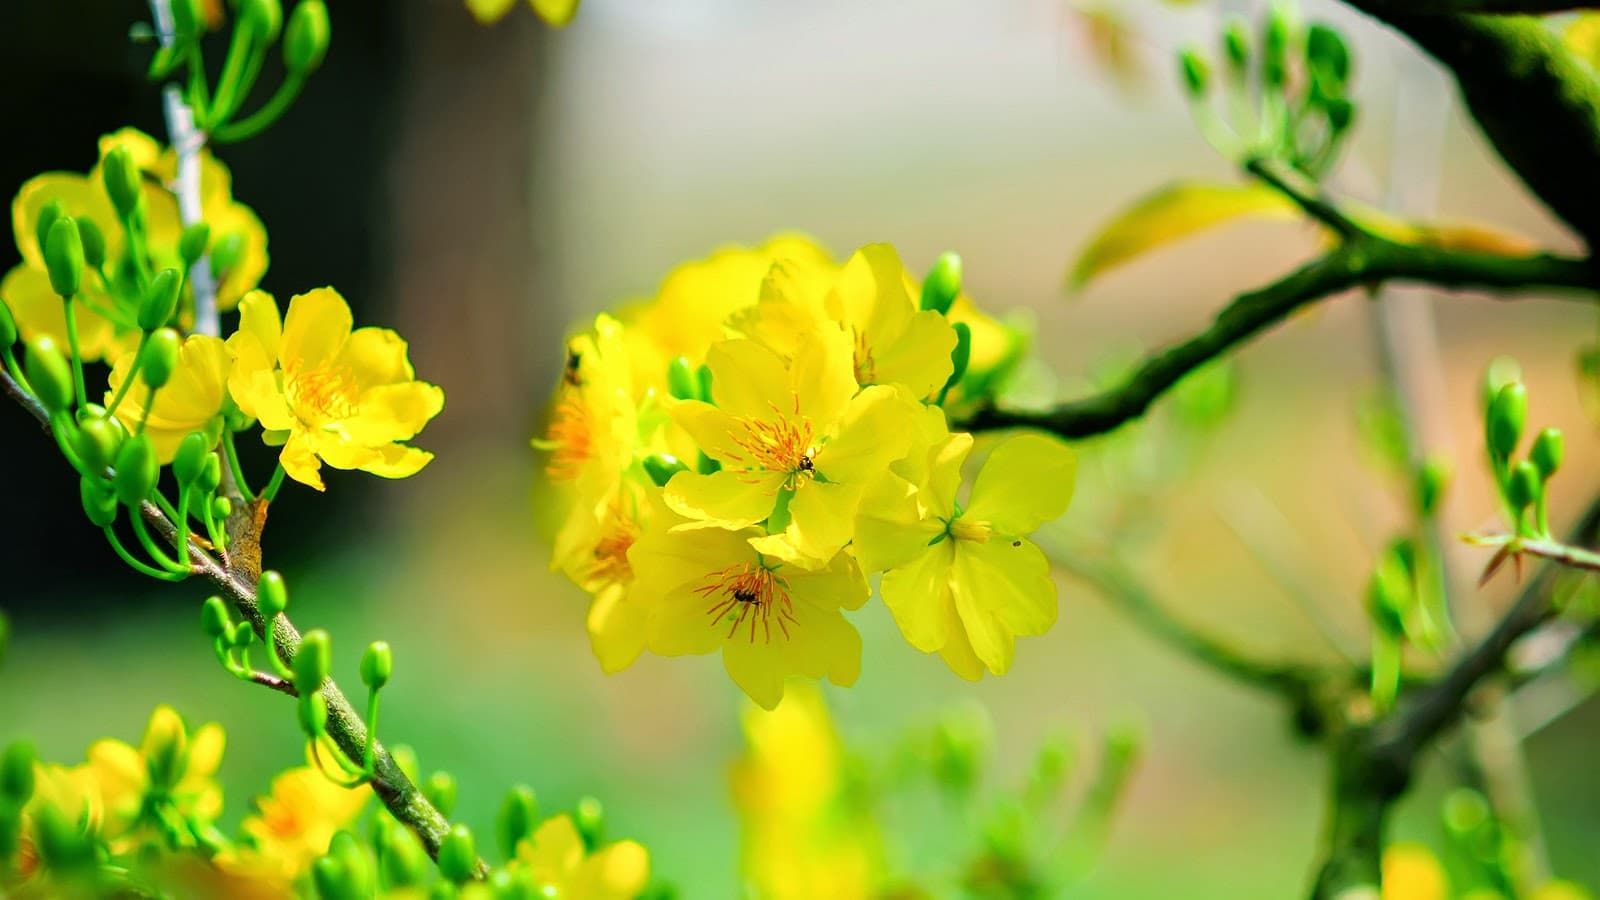 Hình ảnh hoa mai vàng đẹp, ấn tượng nhất ngày Tết-31